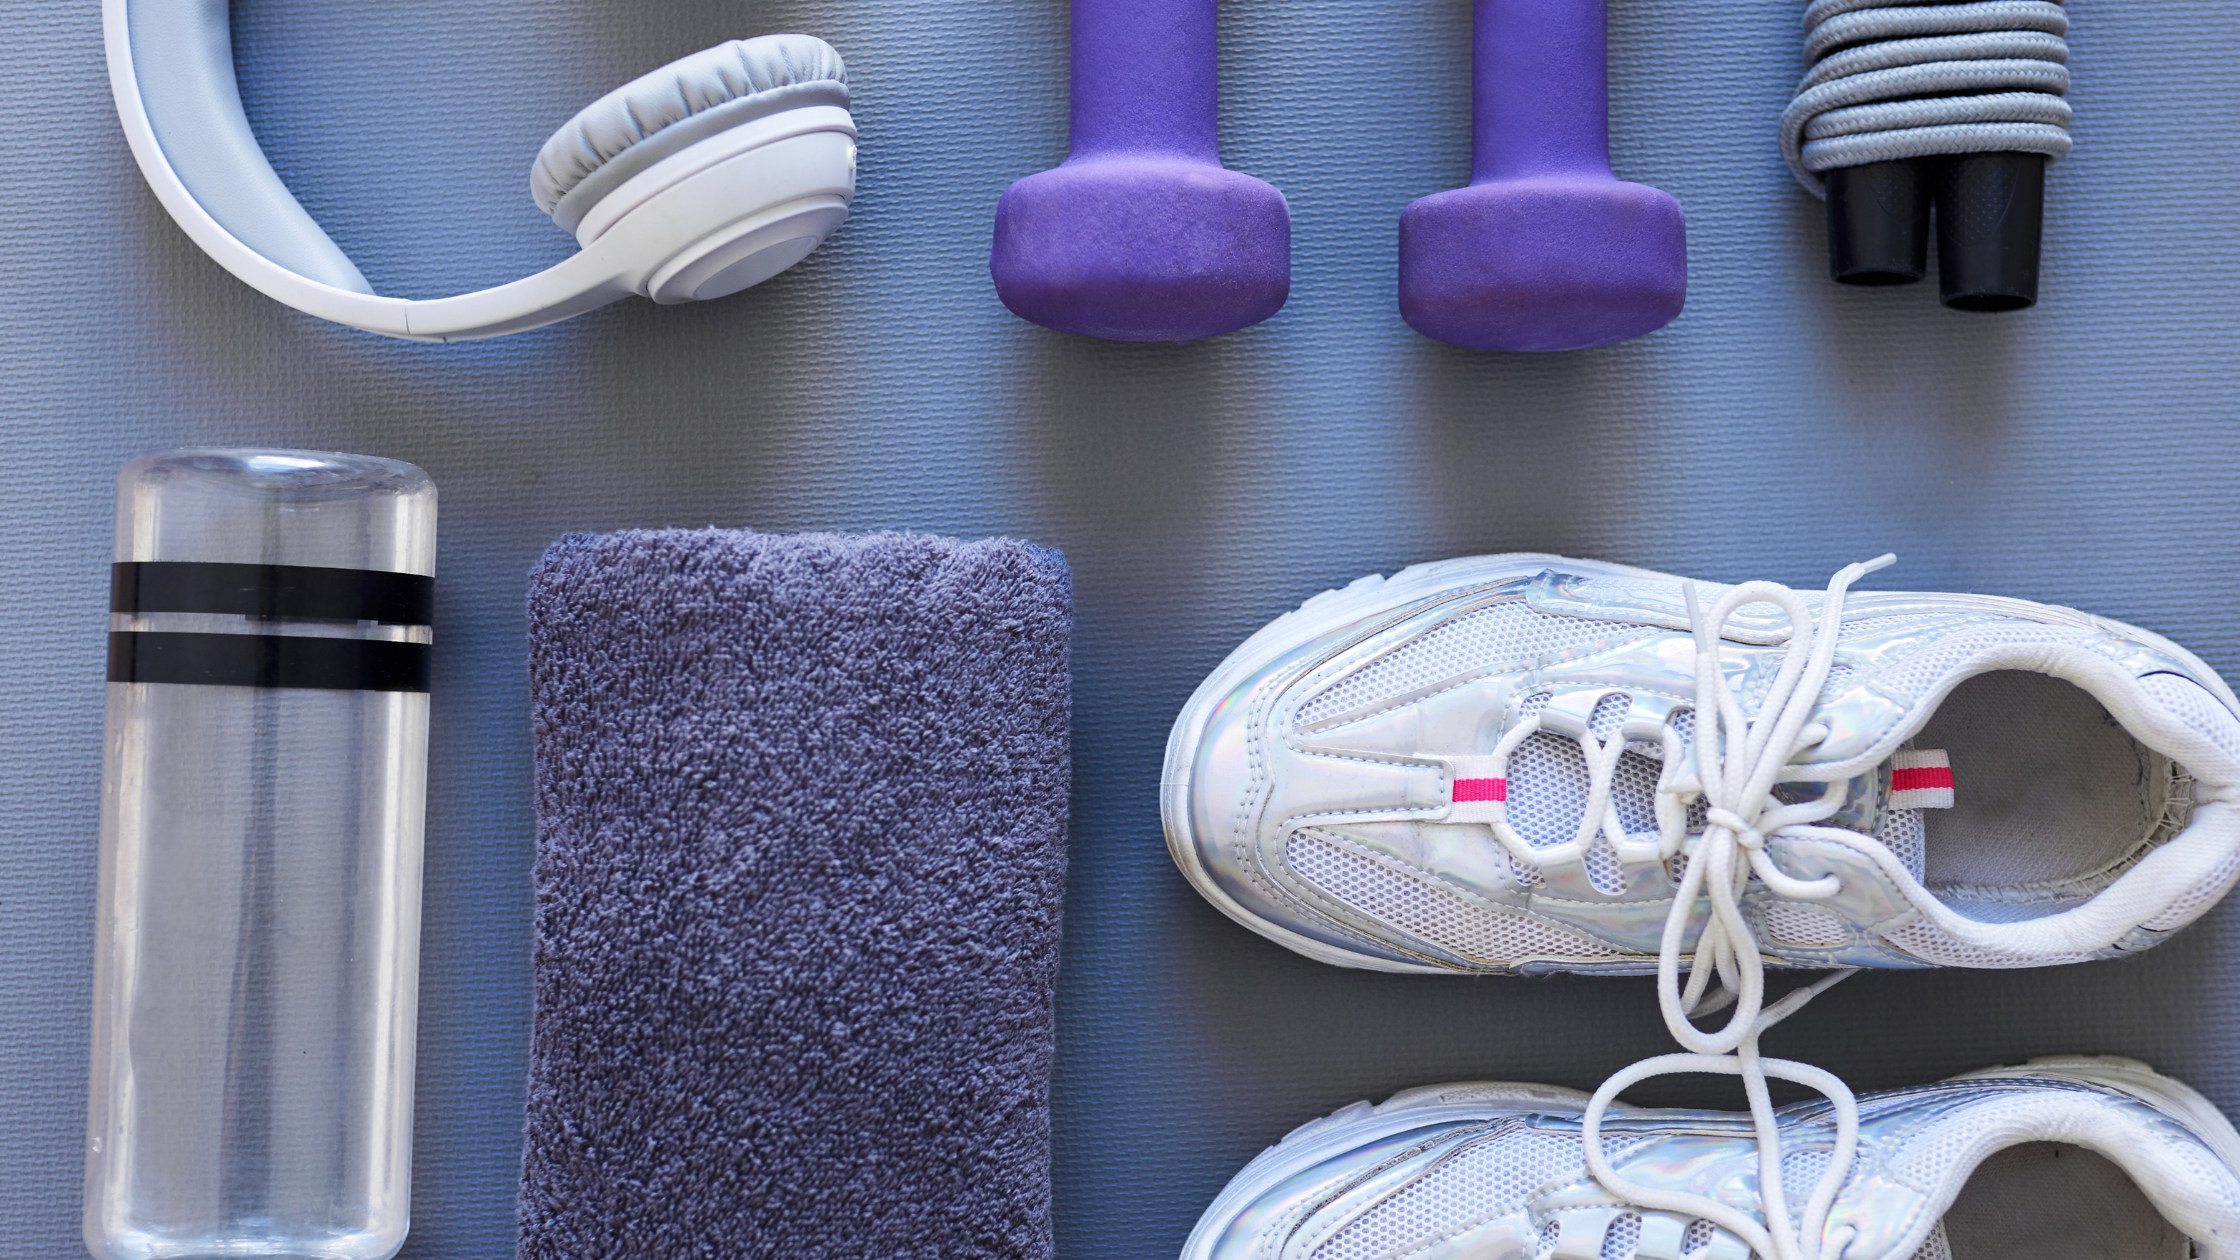 Gentle exercise supplies: sneakers, towel, headphones, water, weights